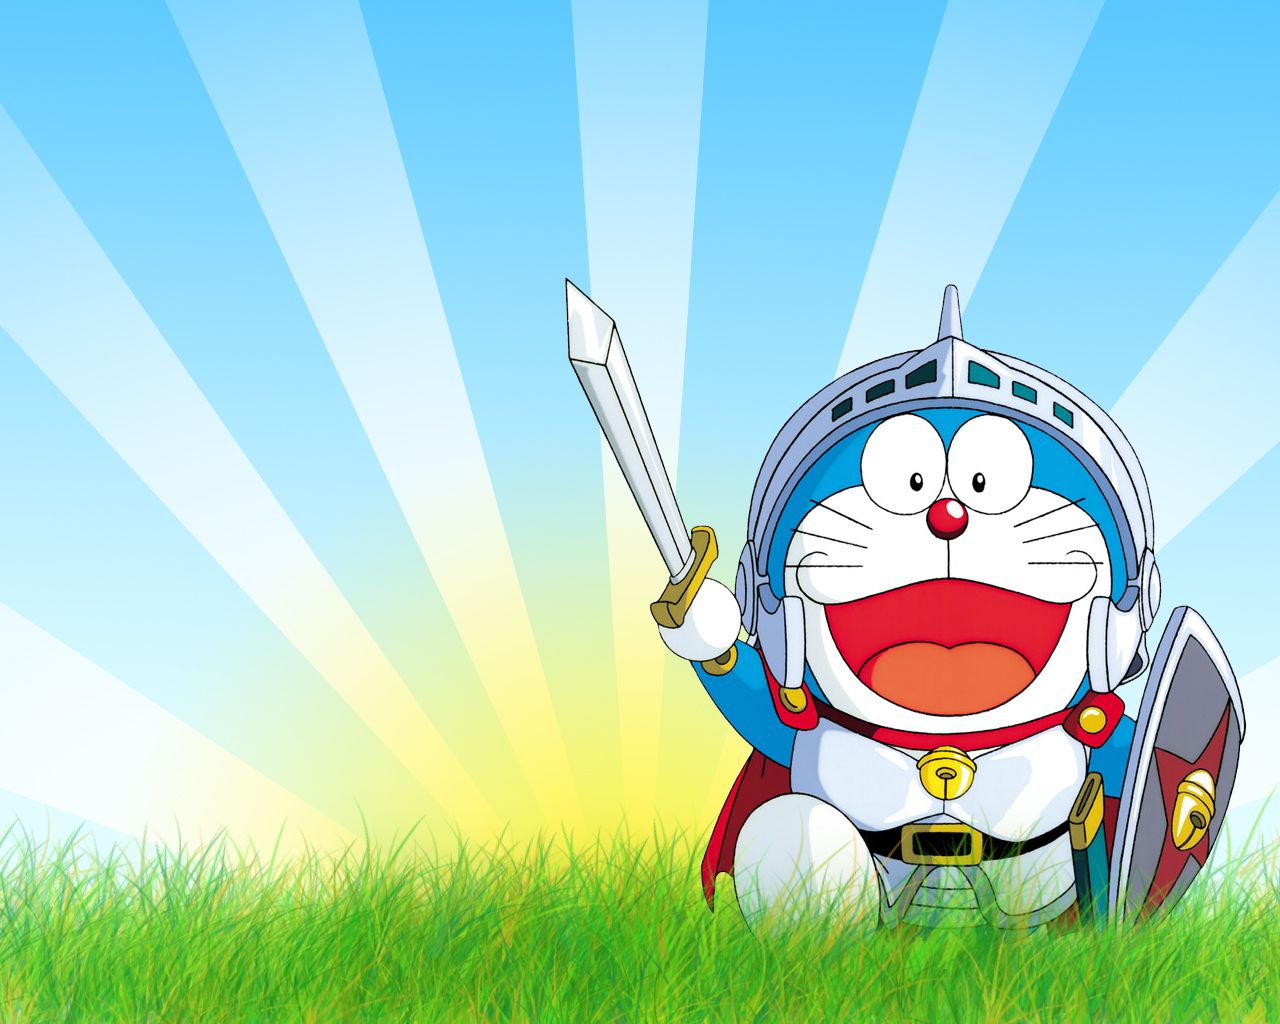 Hình ảnh Doraemon: Hình ảnh Doraemon là một trong những biểu tượng nổi tiếng của văn hóa pop Nhật Bản và được yêu thích trên toàn thế giới. Nếu bạn là một fan hâm mộ của chú mèo máy Doraemon, hình ảnh này sẽ khiến bạn cảm thấy rất thích thú và hồi hộp.